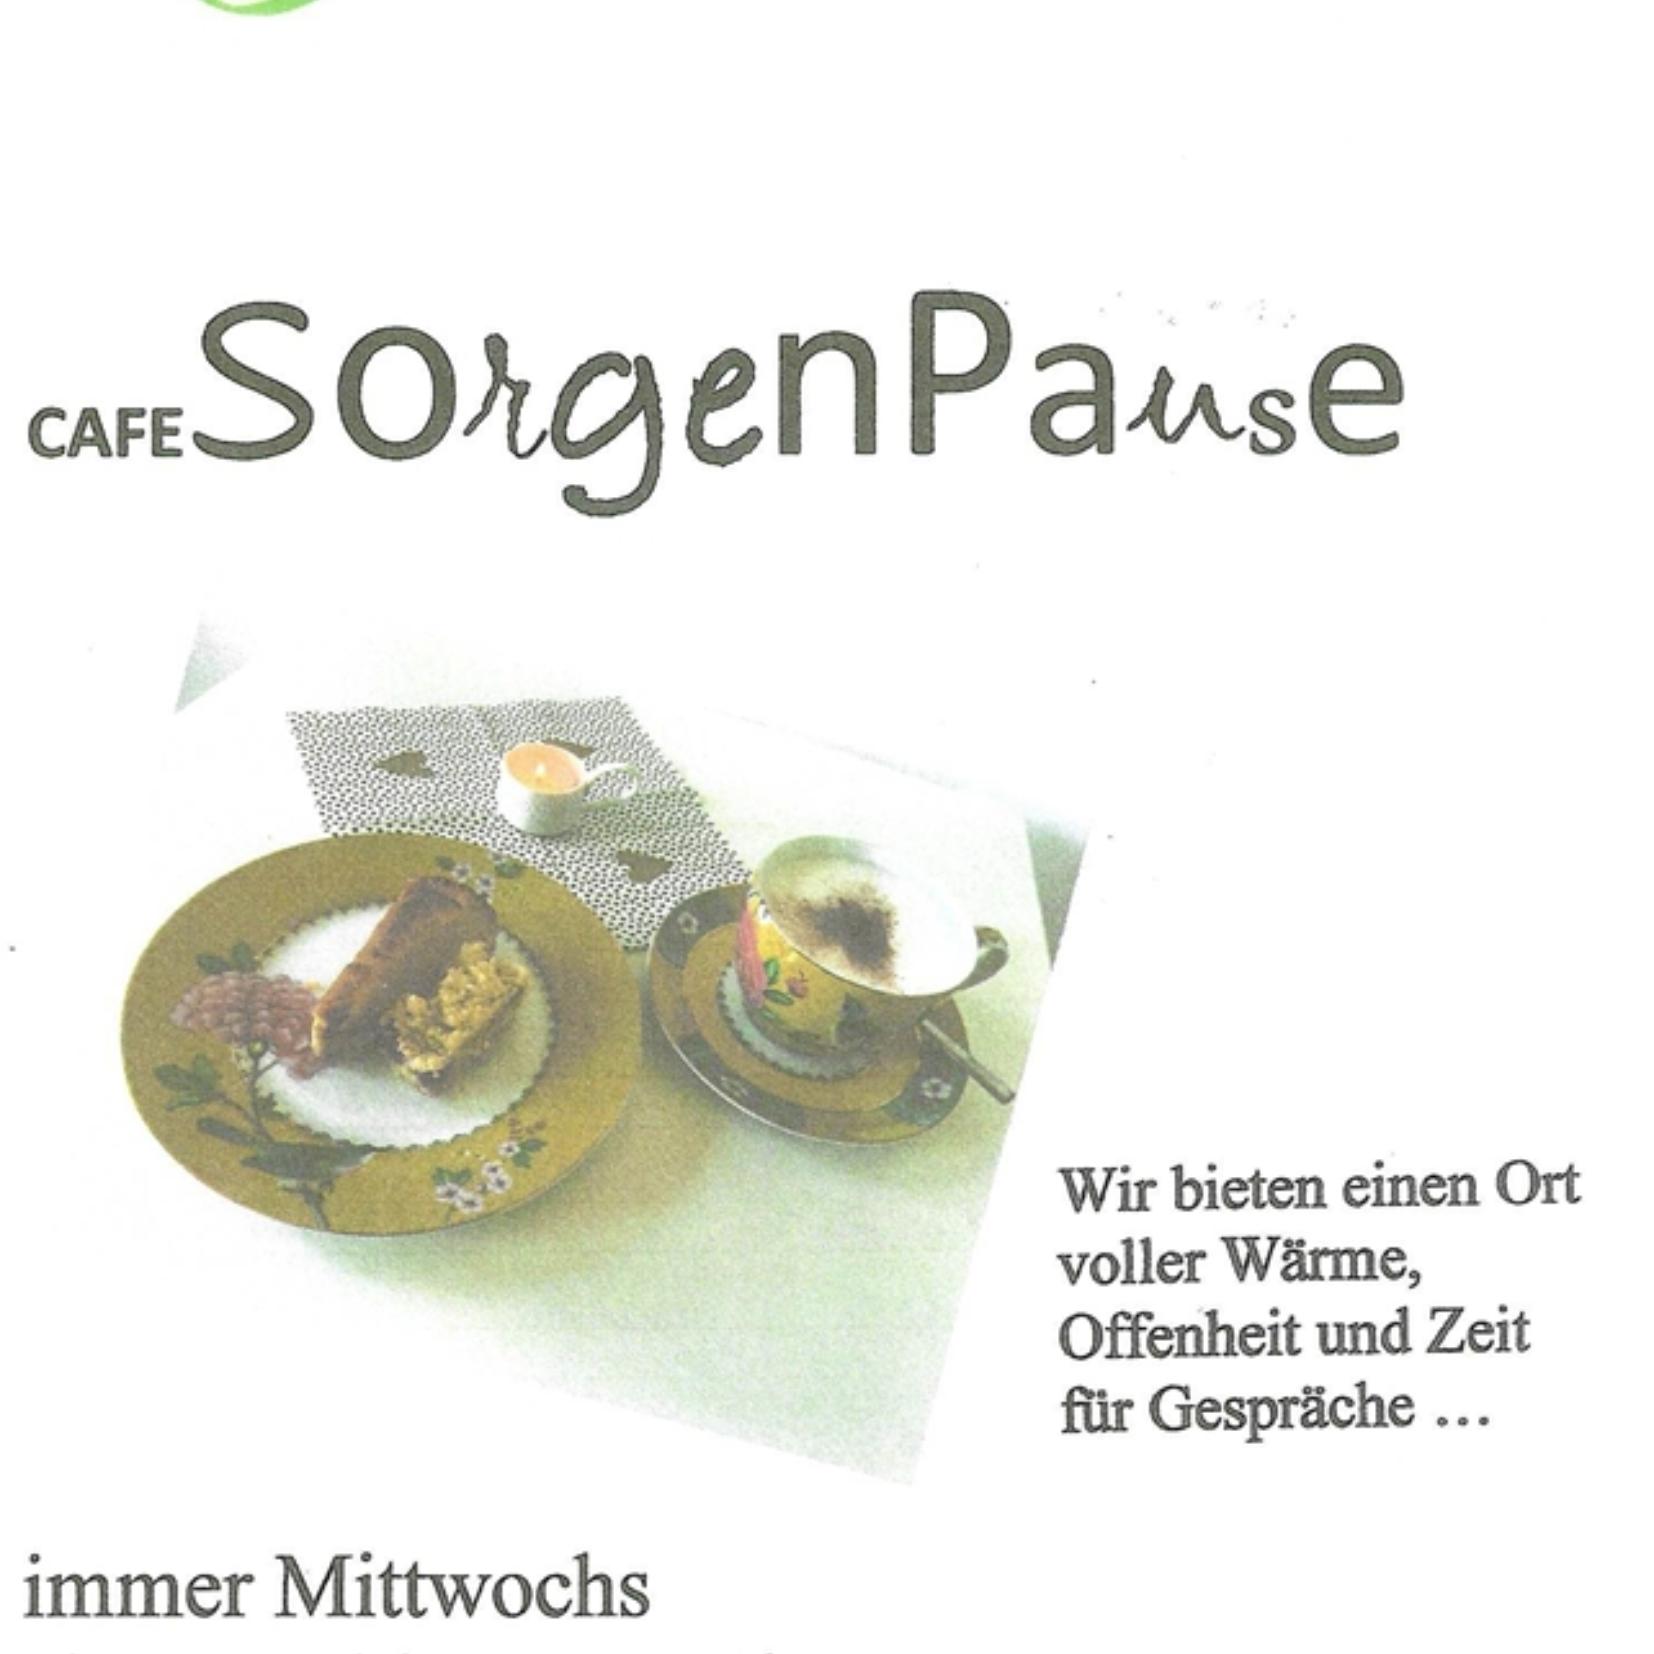 Cafe SorgenPause (c) Cafe Sorgenpause